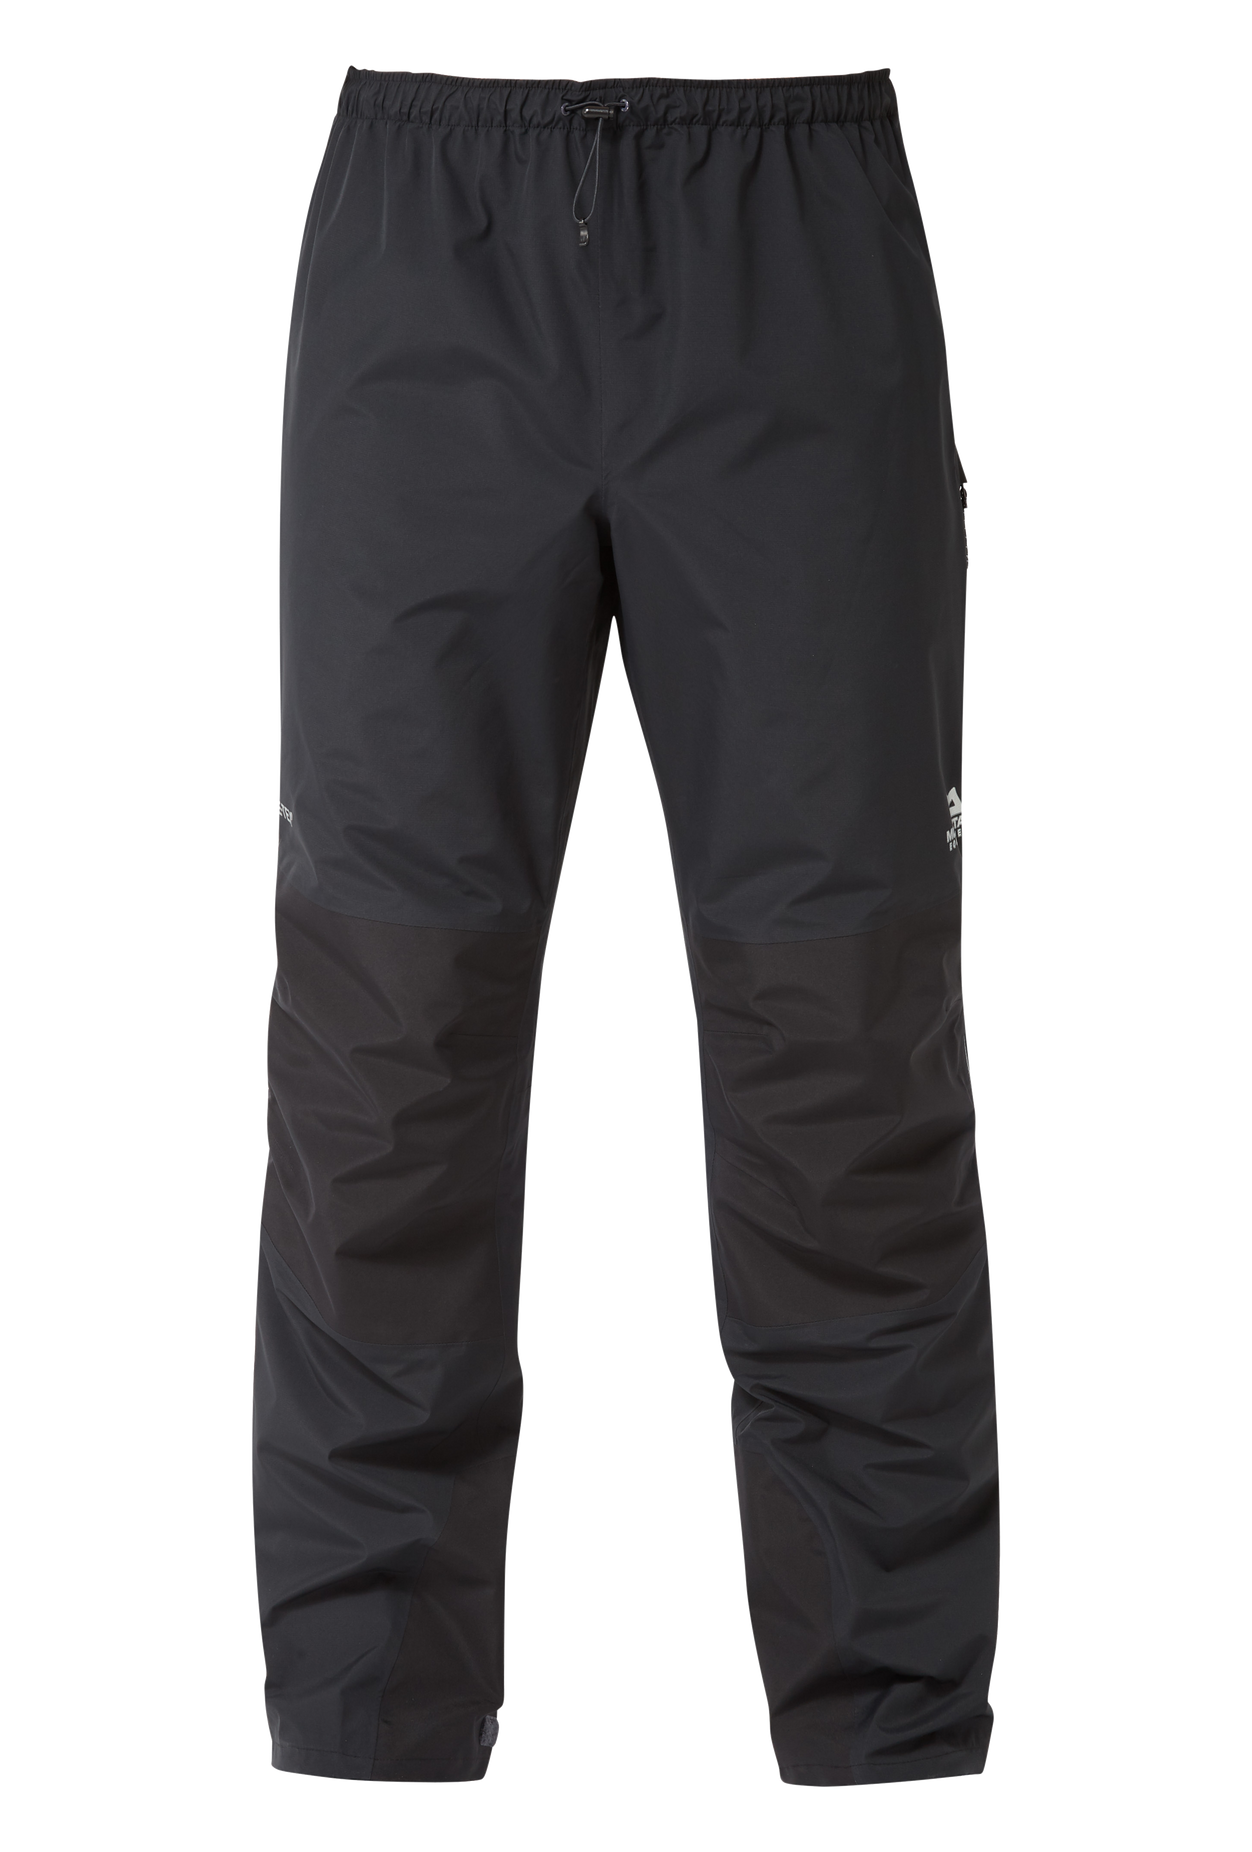 Mountain Equipment pánské nepromokavé kalhoty Saltoro Pant - prodloužené Barva: black, Velikost: L